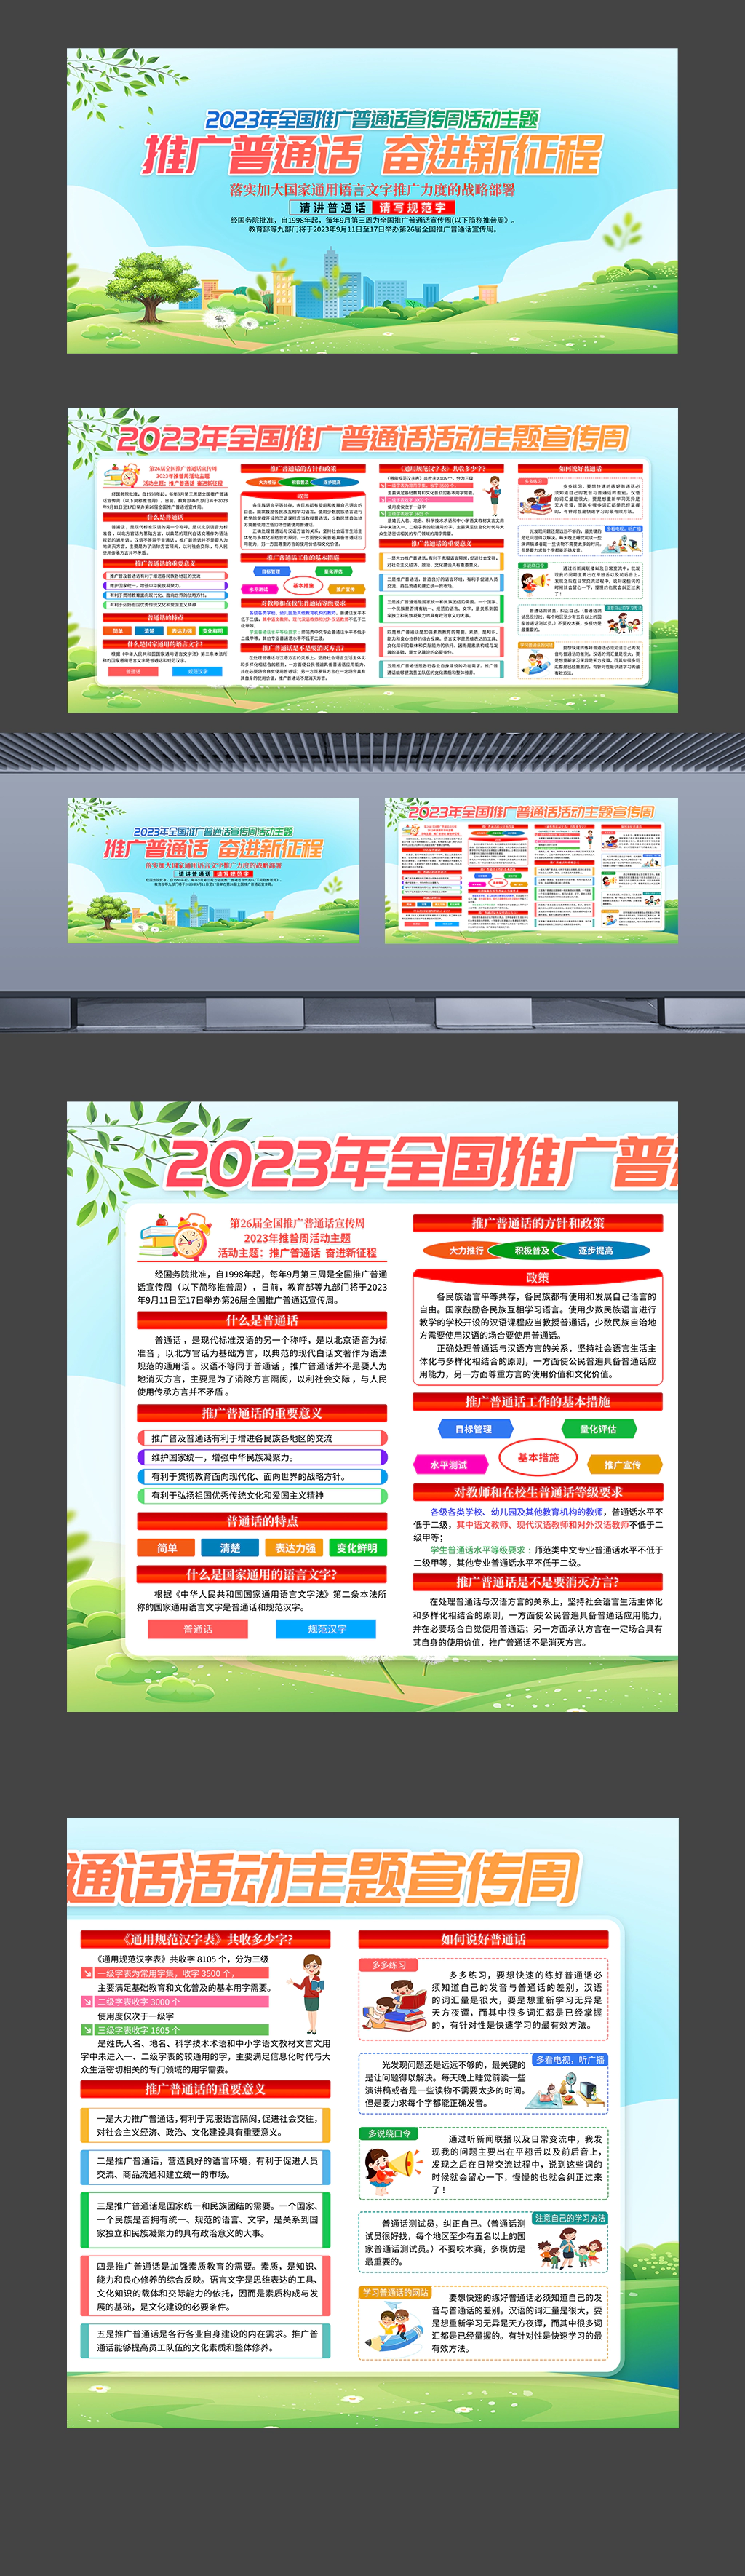 2023年全国推广普通话宣传周活动主题教育展板